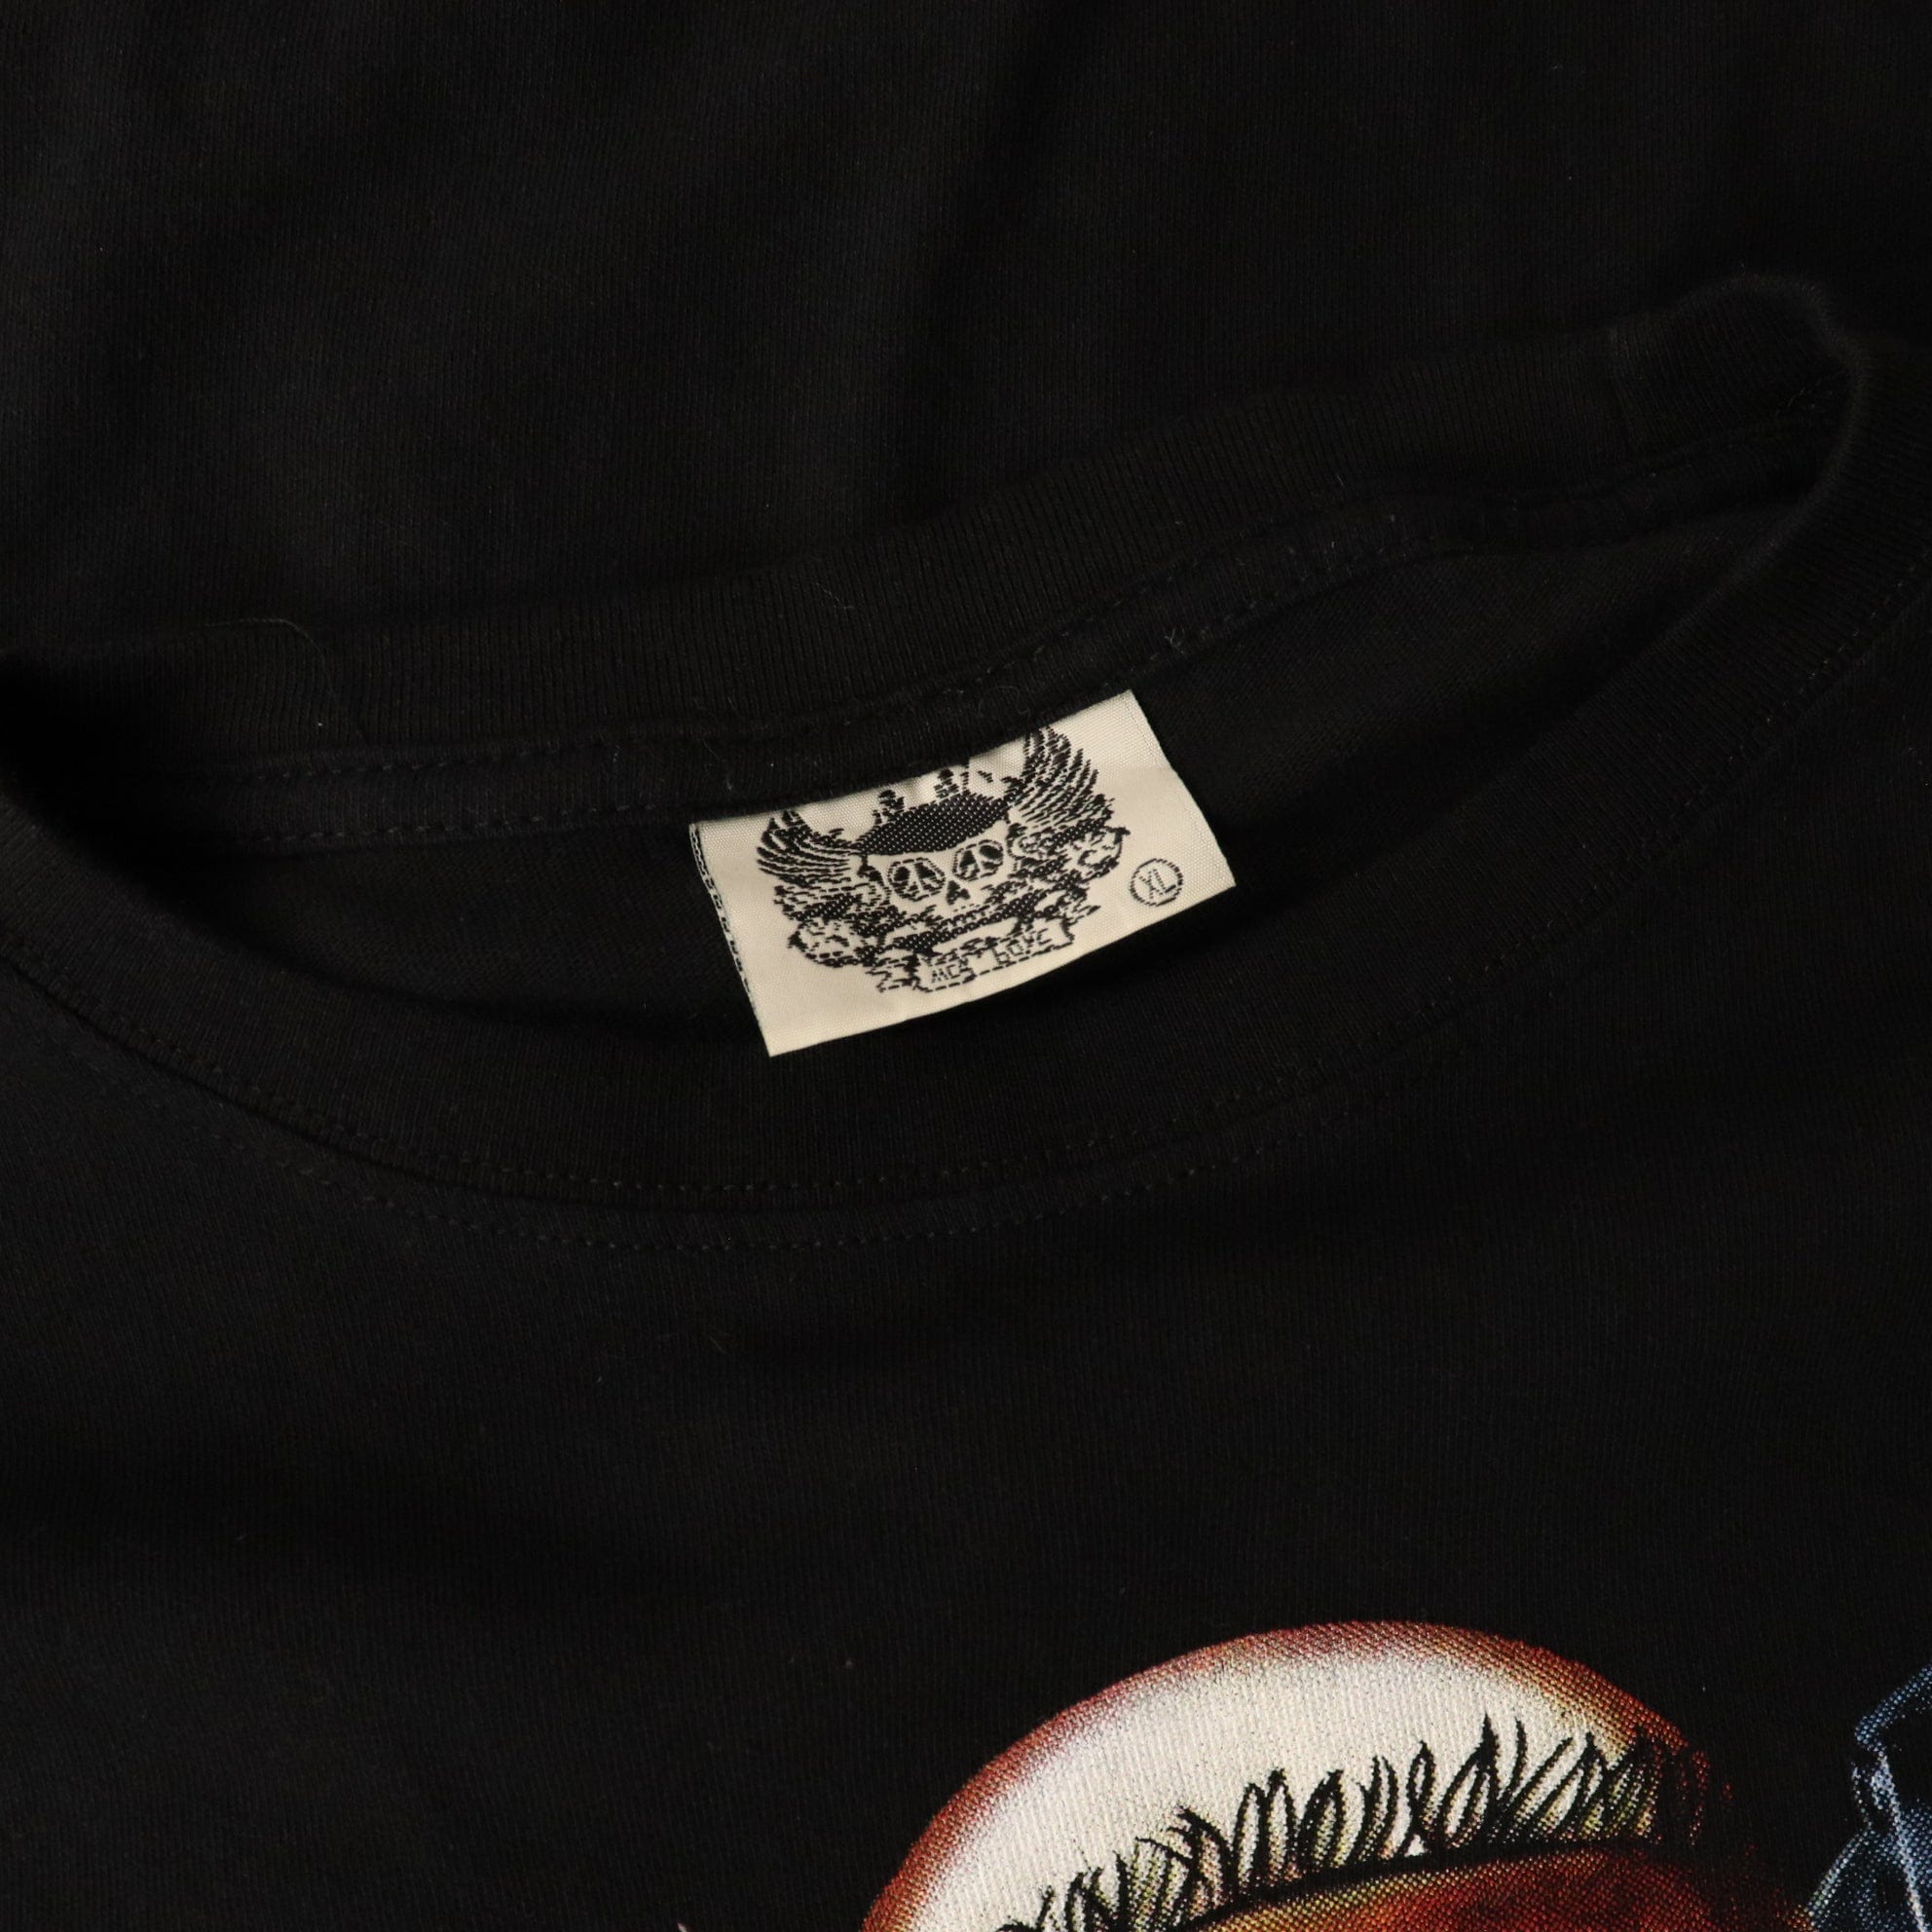 Slipknot All Hope Is Gone T Shirt Size XL Fits Medium | Proper Vintage